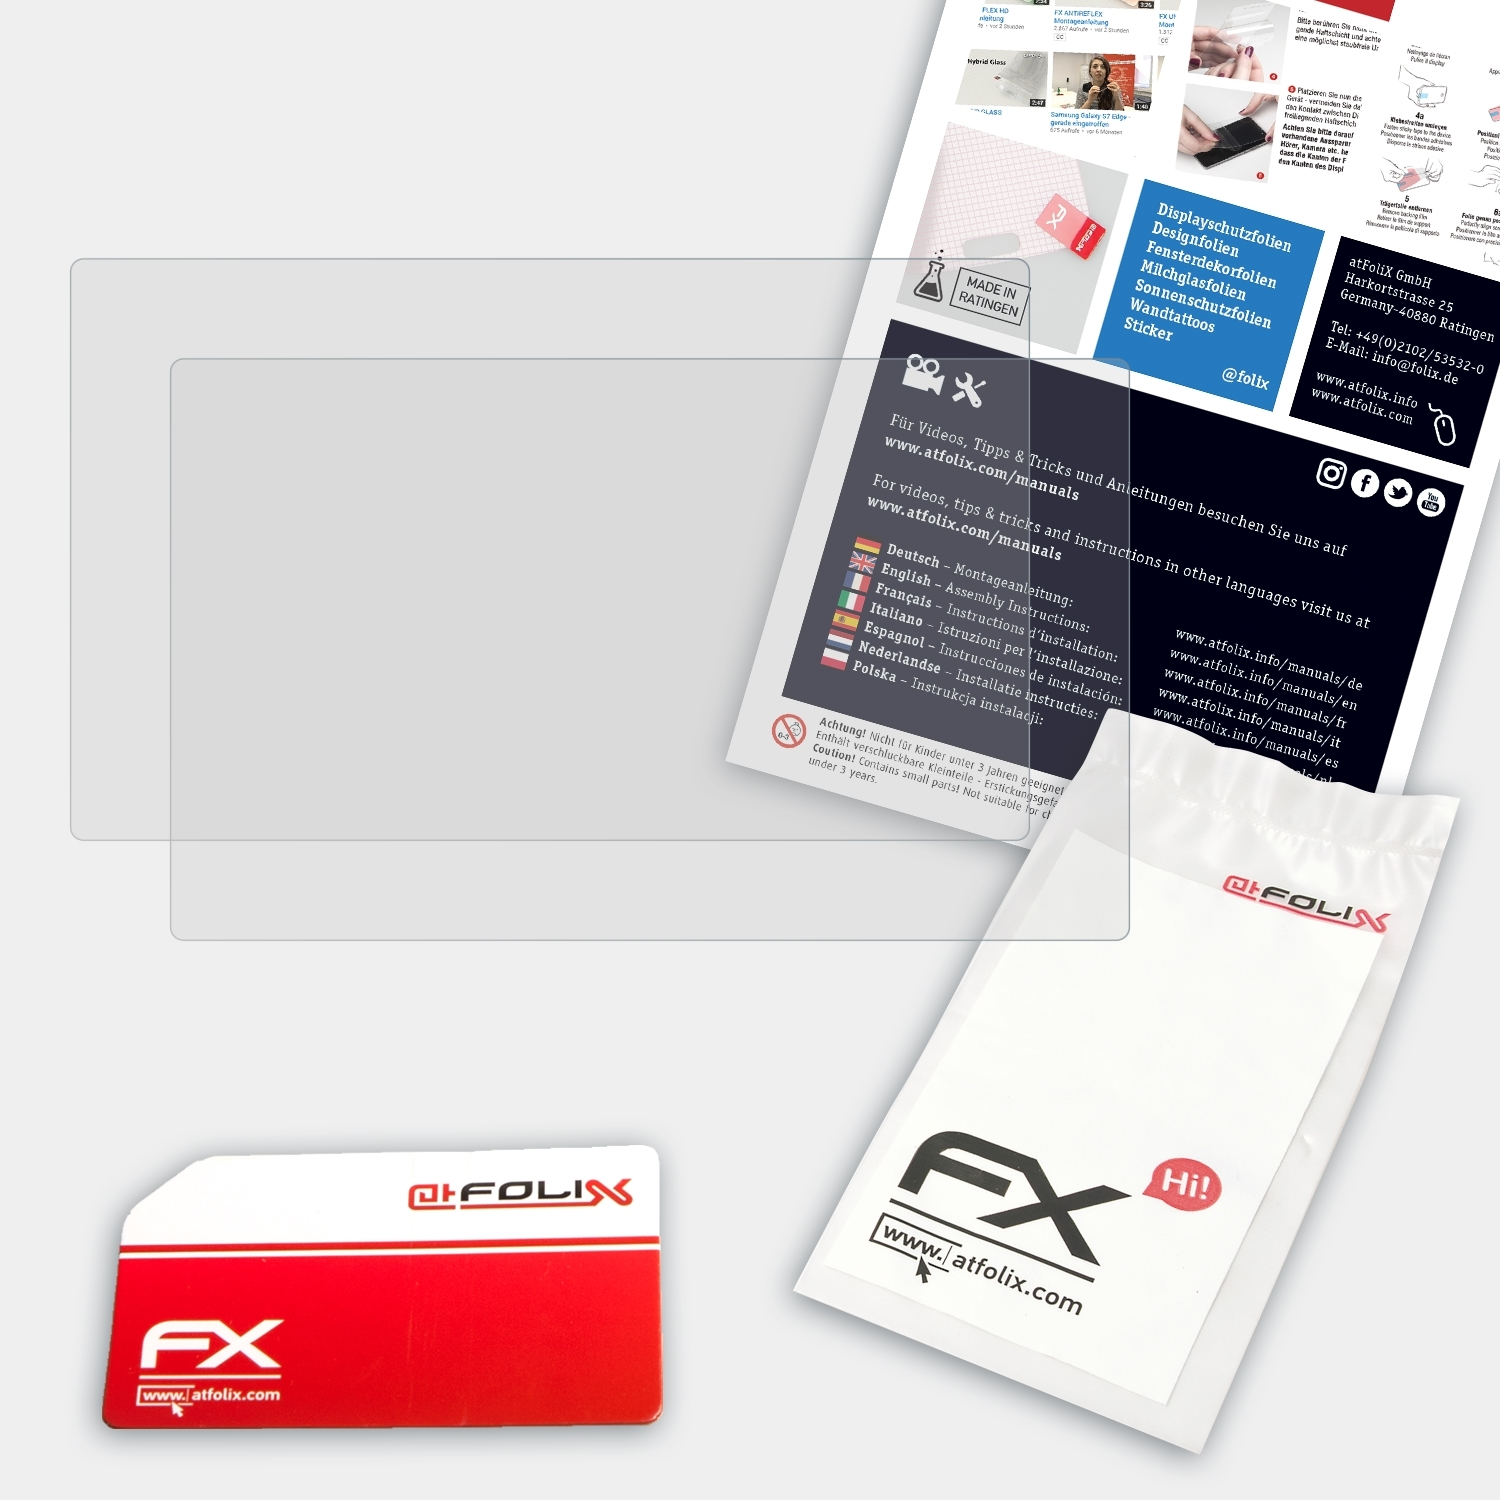 ATFOLIX 2x FX-Antireflex Displayschutz(für Artist 22R XP-PEN Pro)